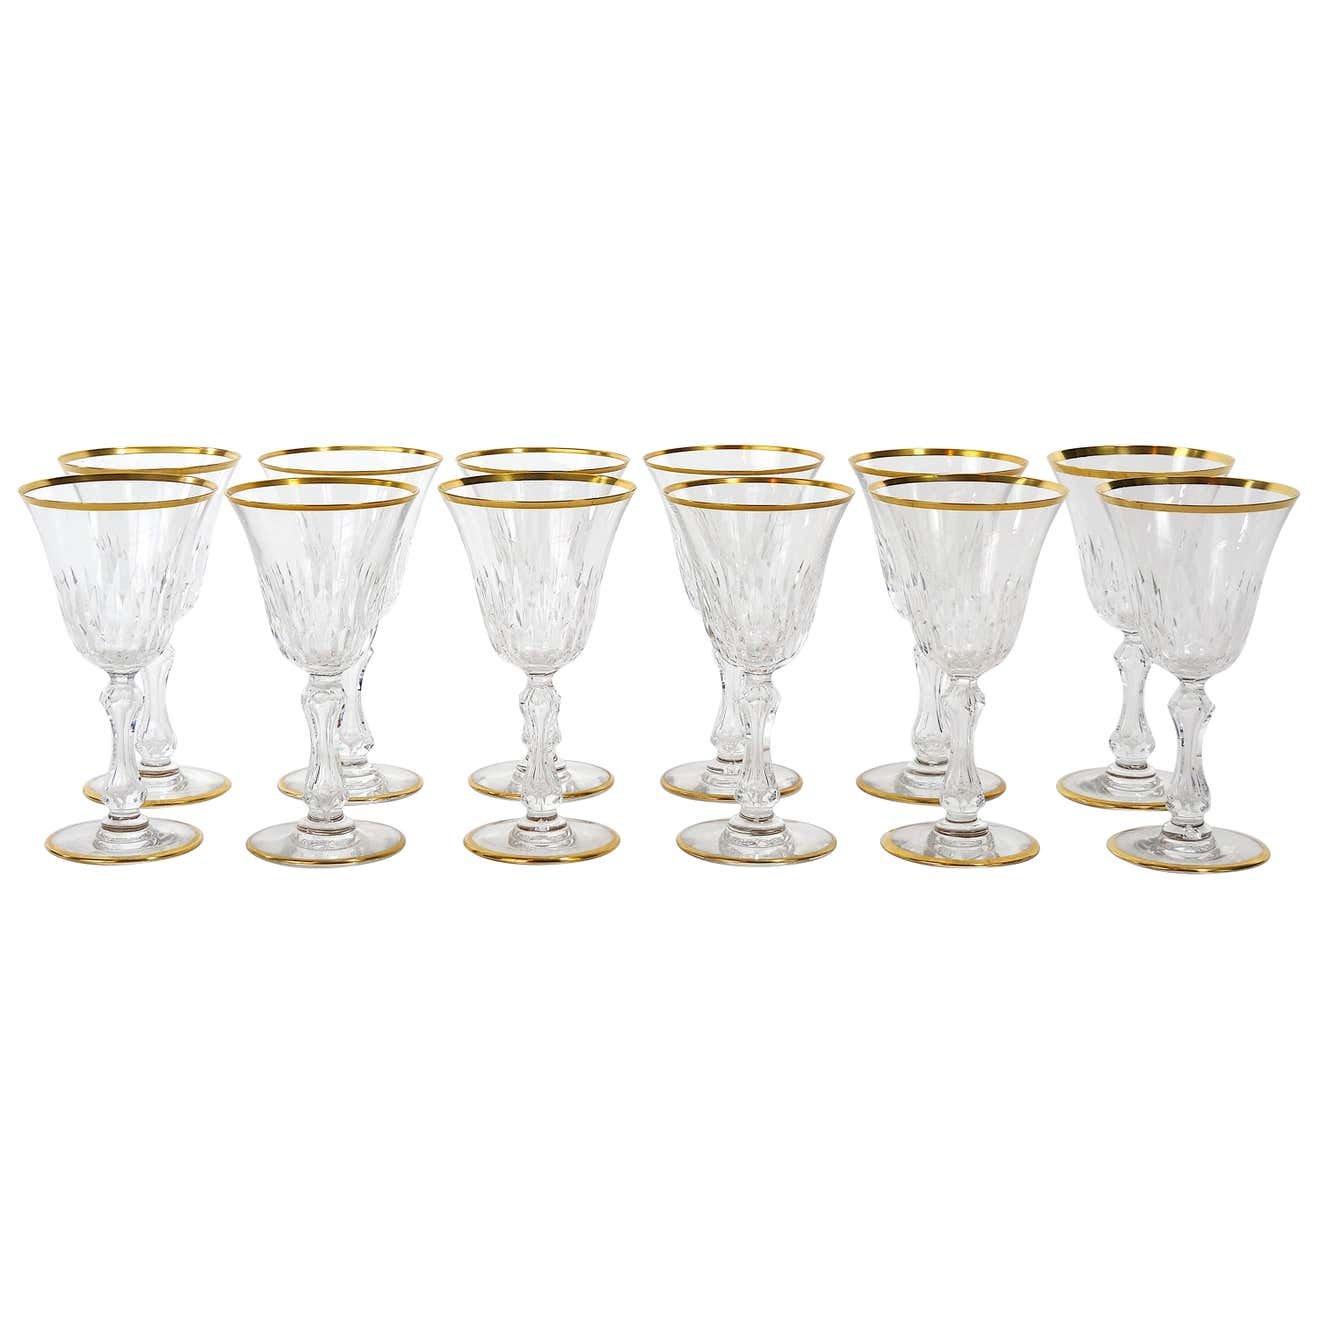 Saint Louis Crystal Gold Trim Tableware Service / 12 People — La Maison  Supreme Ltd.